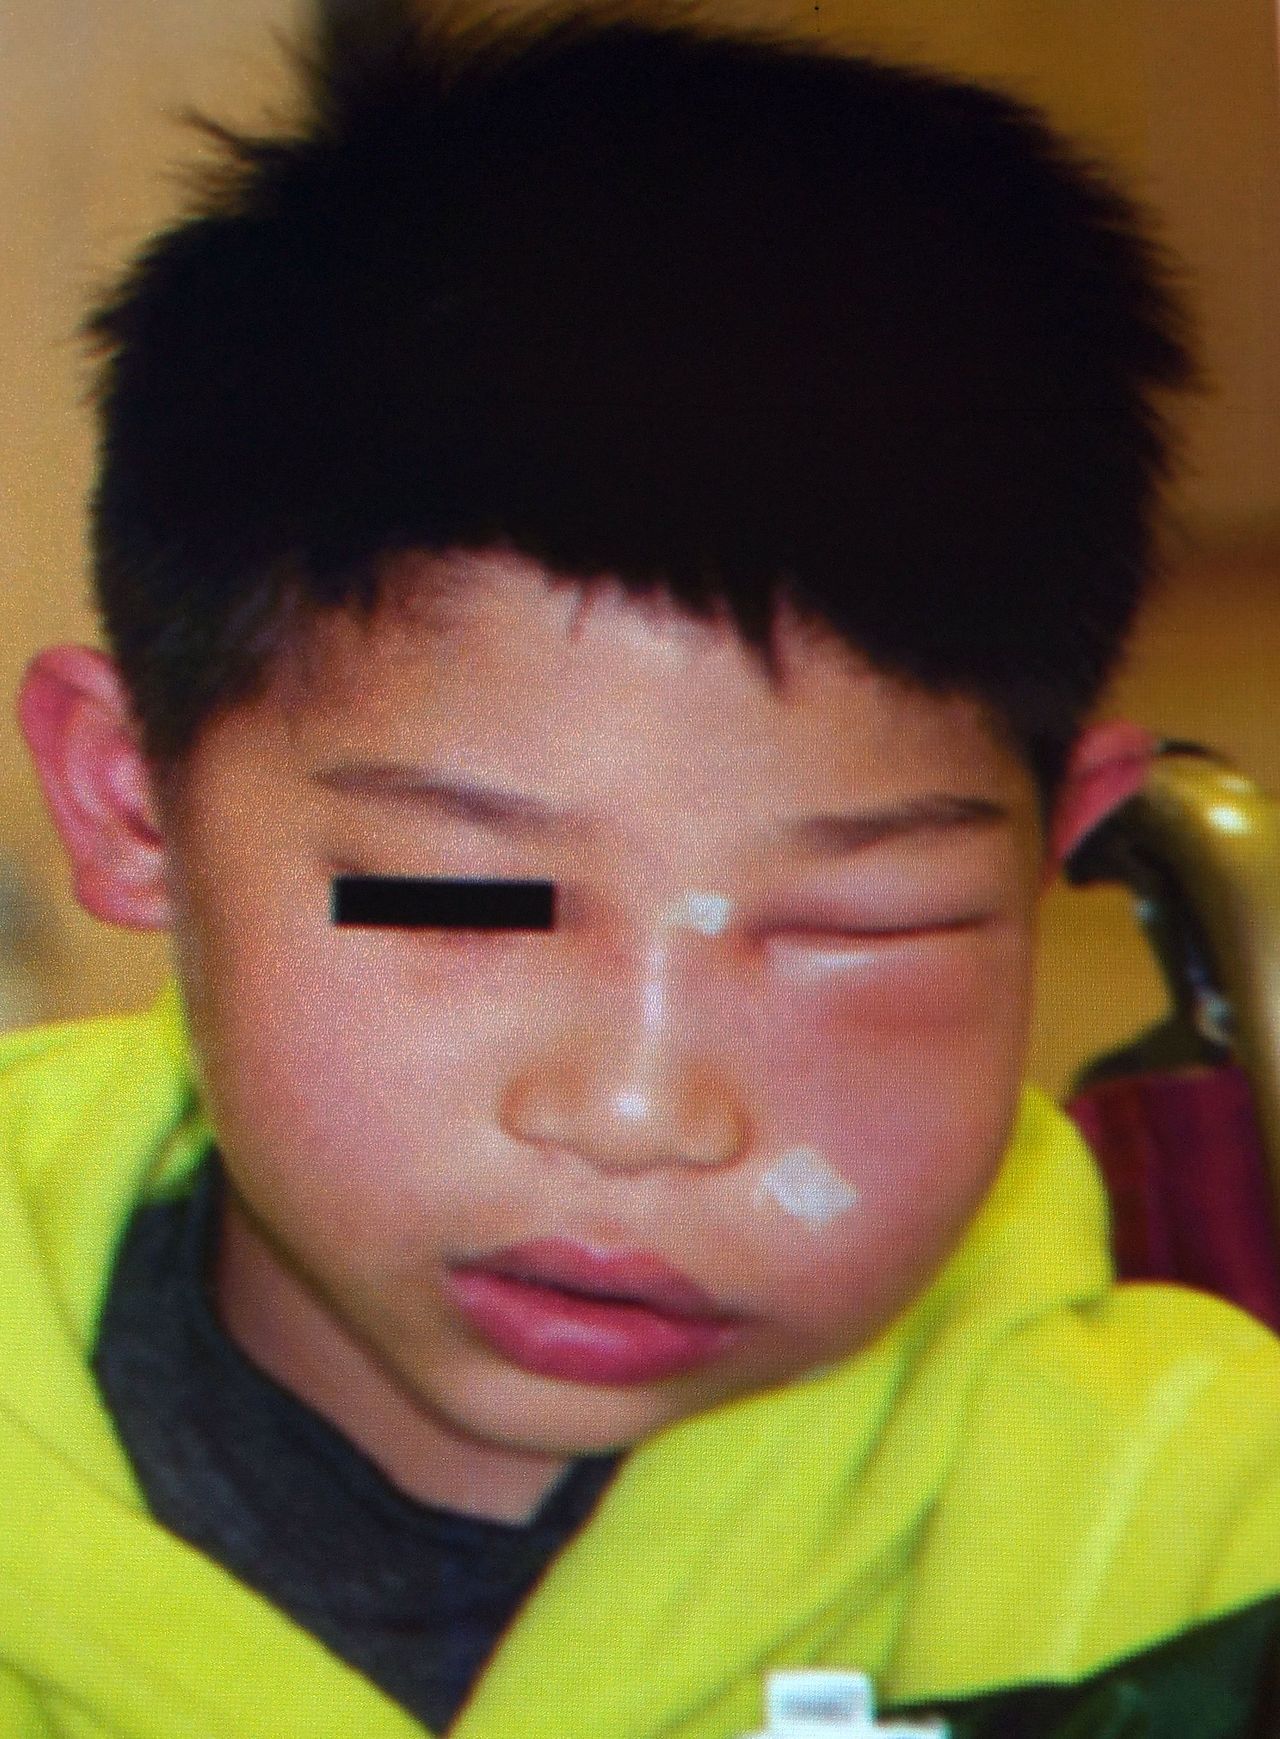 醫師洪仲銳說明，5歲黃小弟左臉頰腫得像「麵龜」，可能與孩子刷牙不確定有關，建議家長別放任讓孩子自己刷牙不管。圖／洪仲銳提供